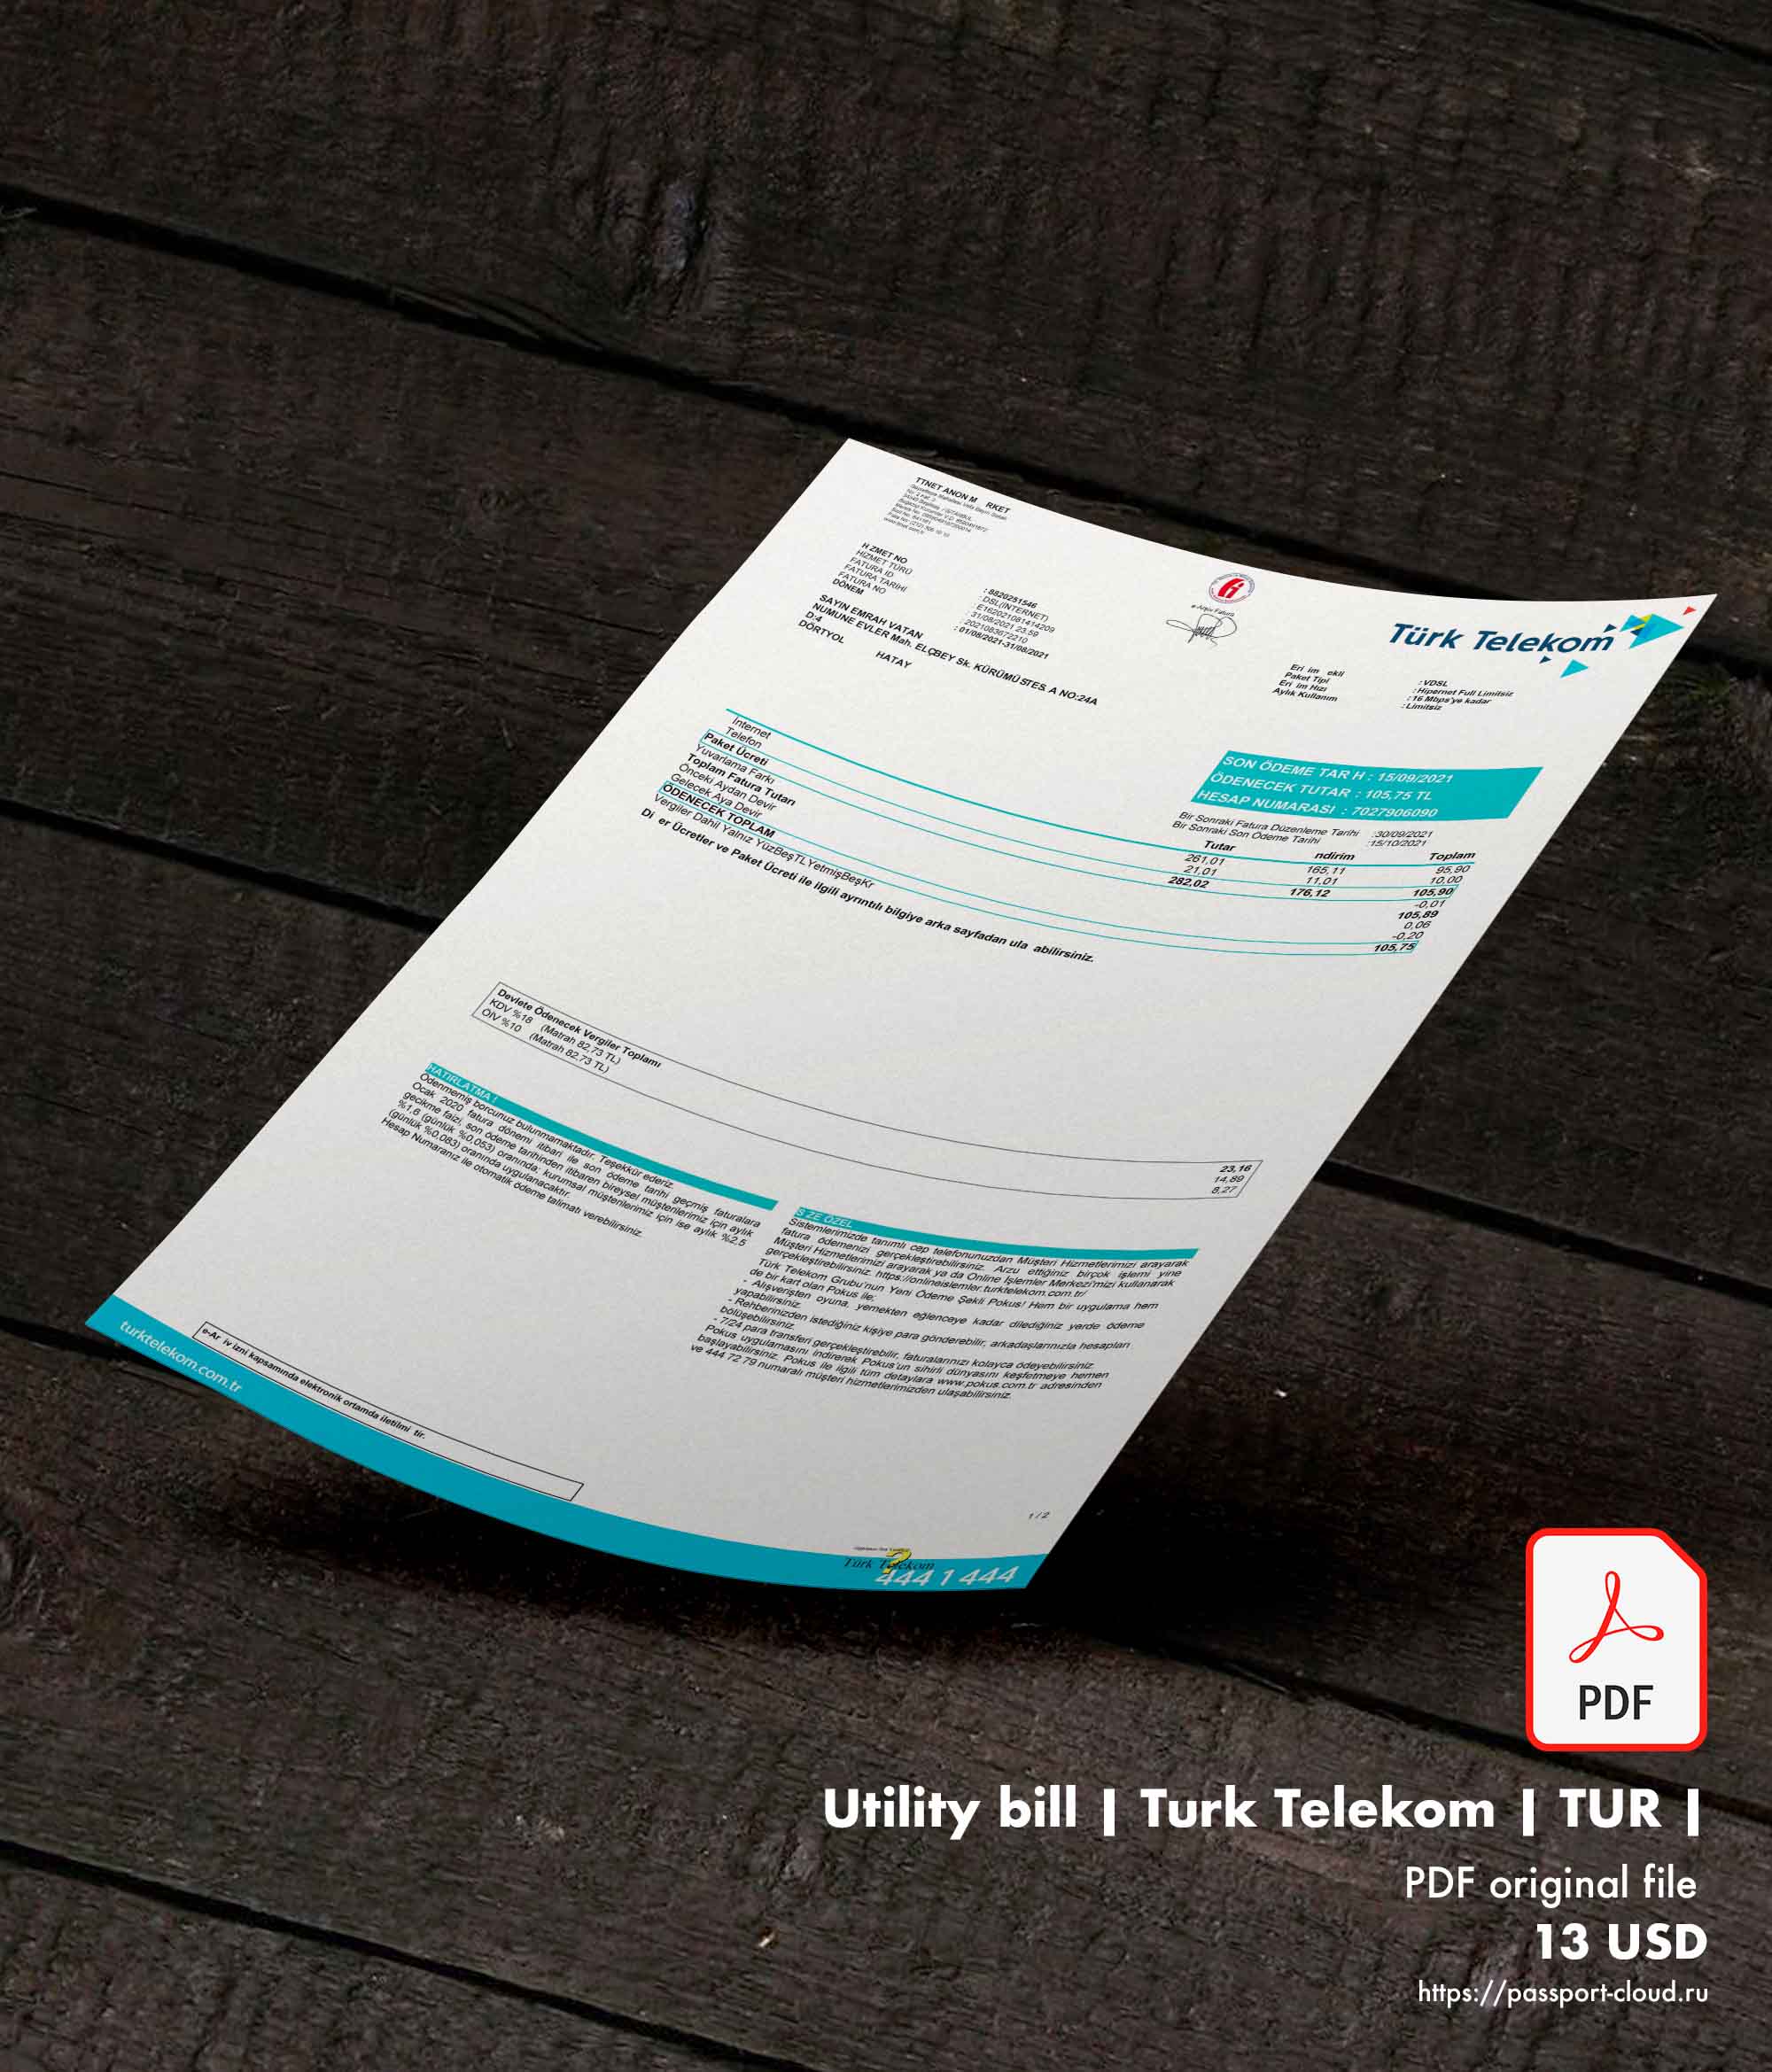 Utility bill | Turk Telekom | TUR |1